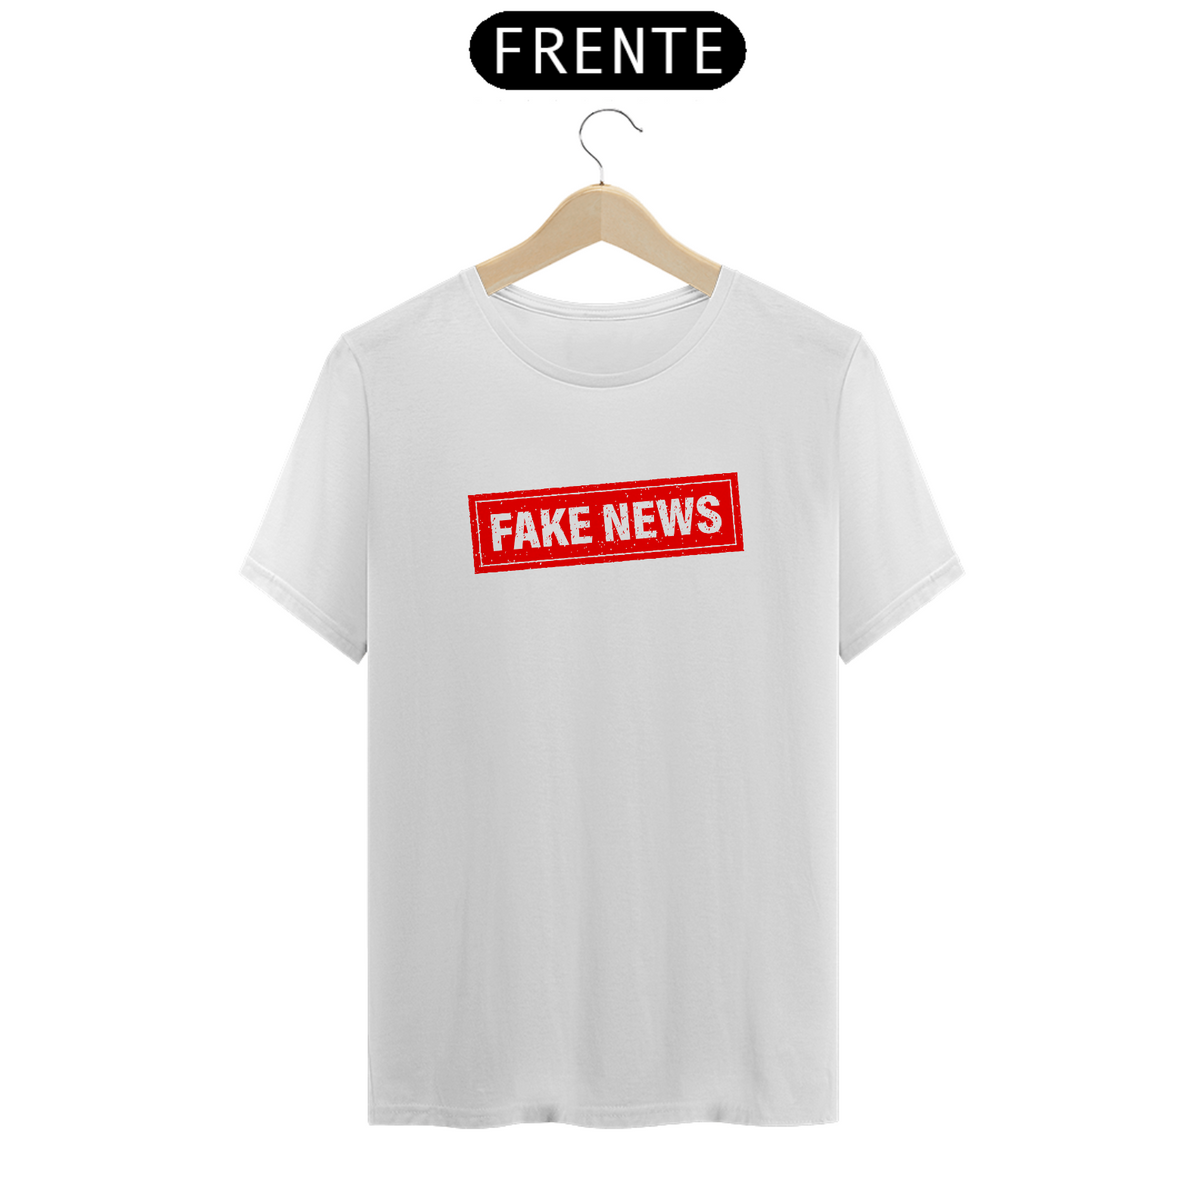 Nome do produto: T-Shirt Classic Unissex / Fake News